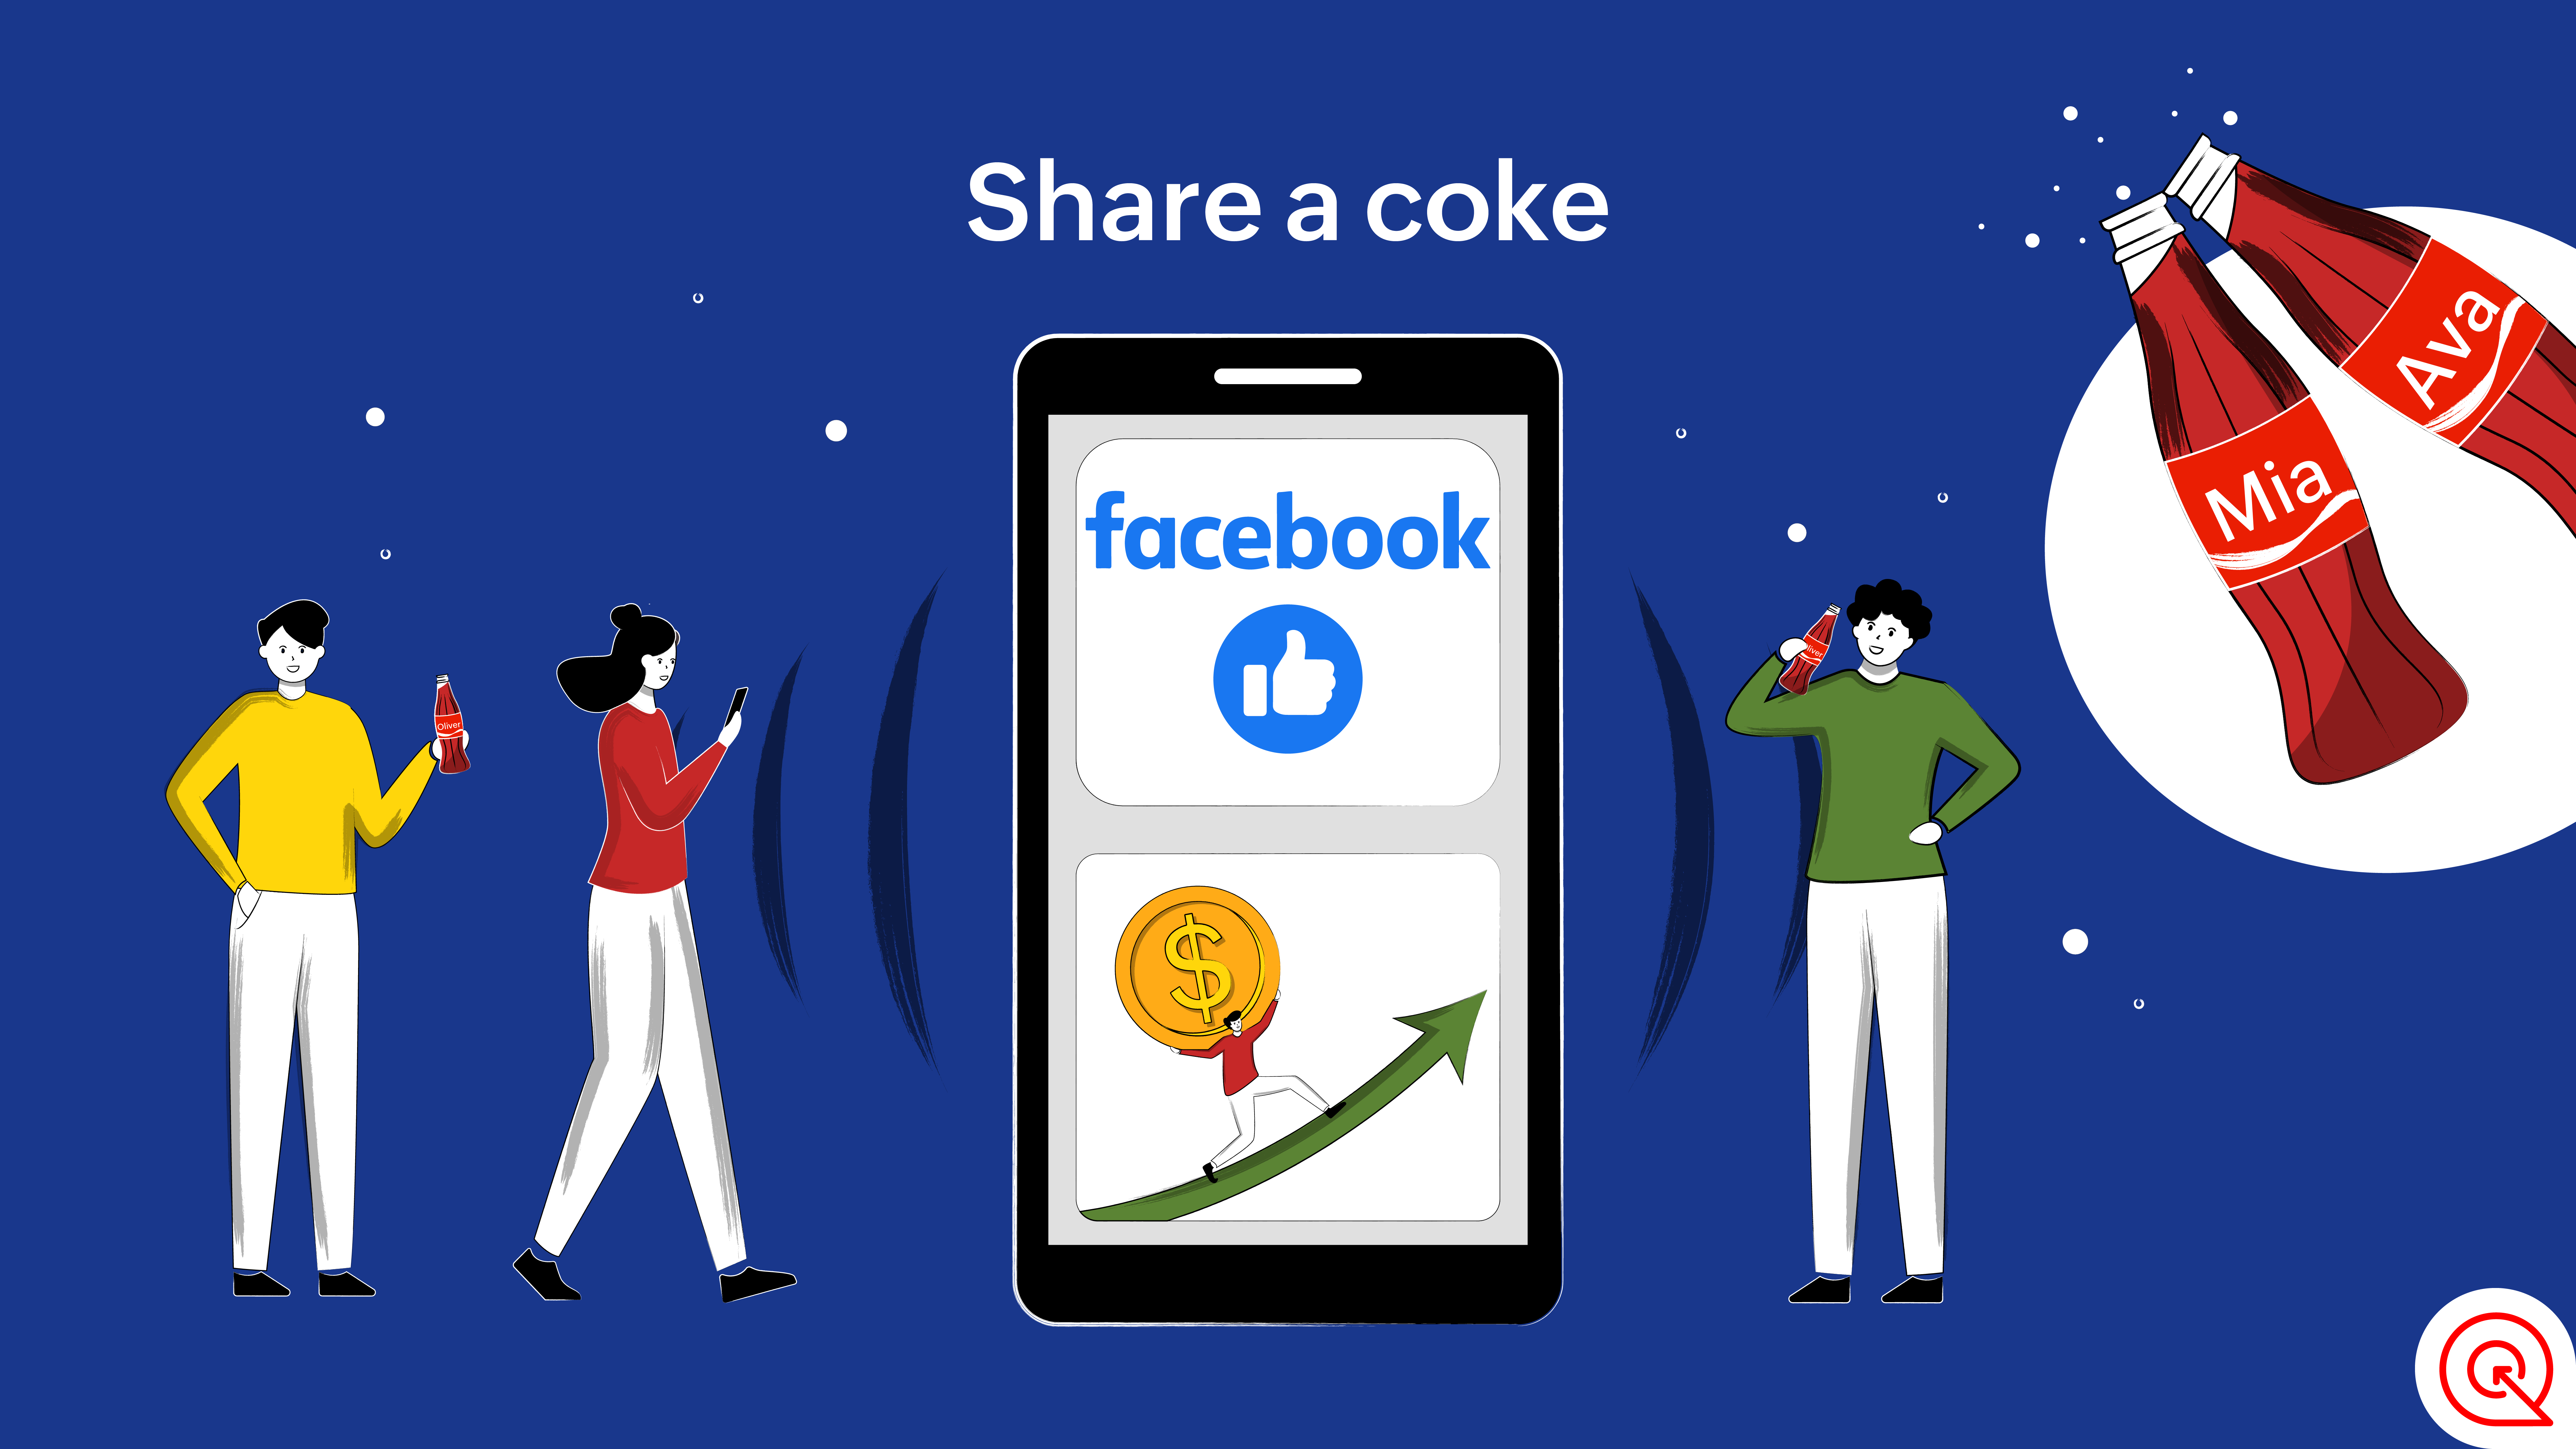 Share a coke - Coca Cola campaign